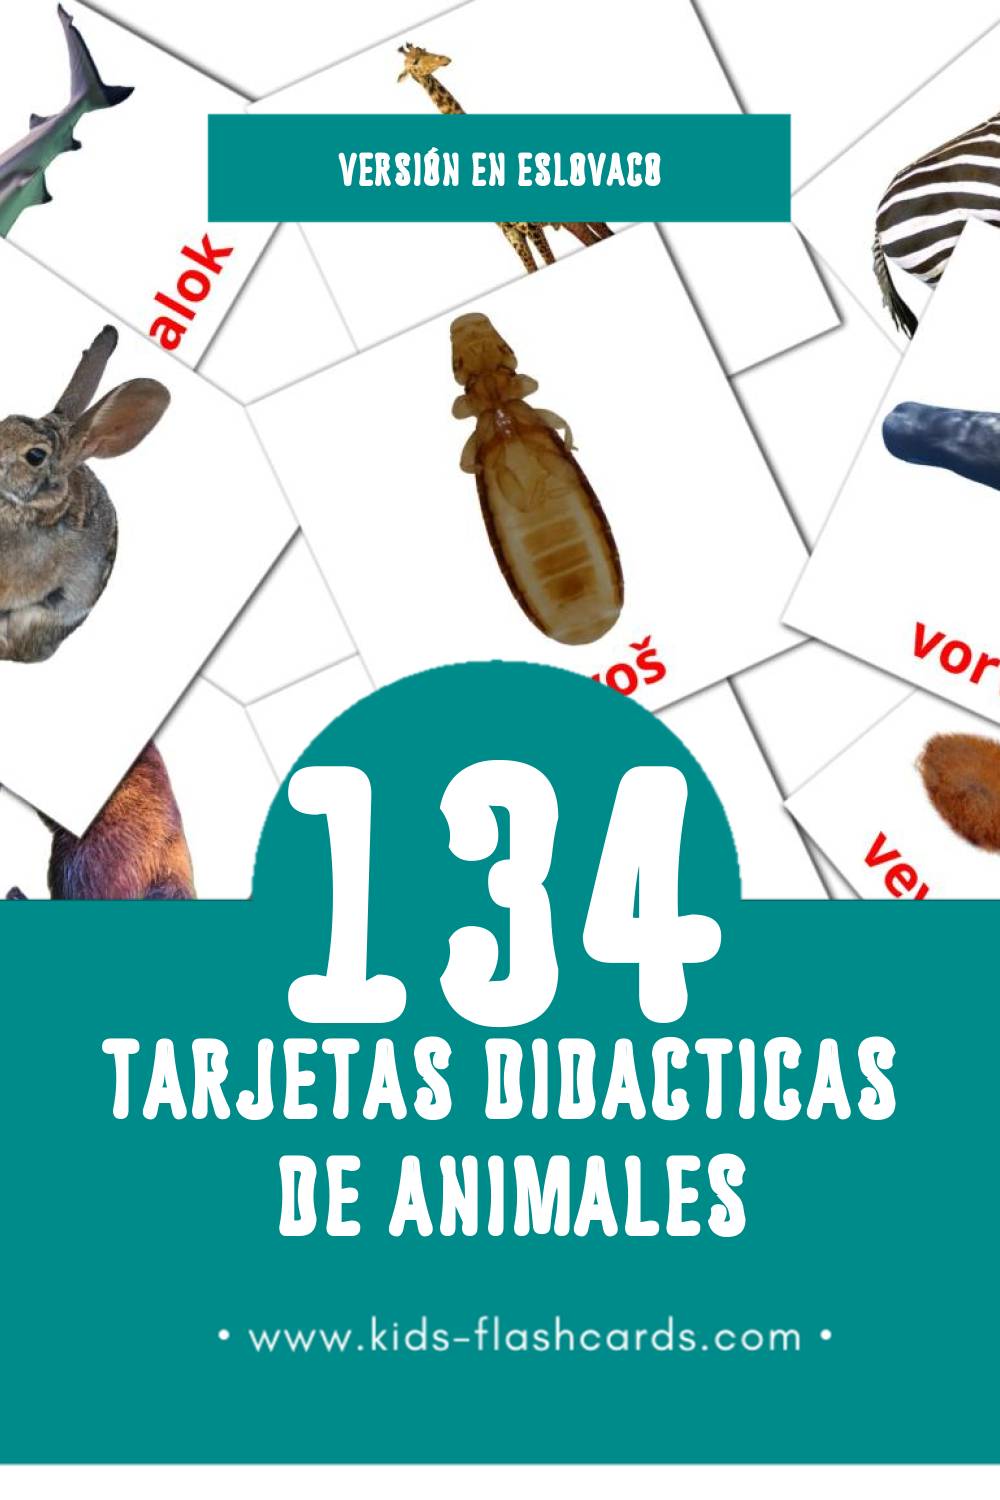 Tarjetas visuales de Zvieratá para niños pequeños (134 tarjetas en Eslovaco)